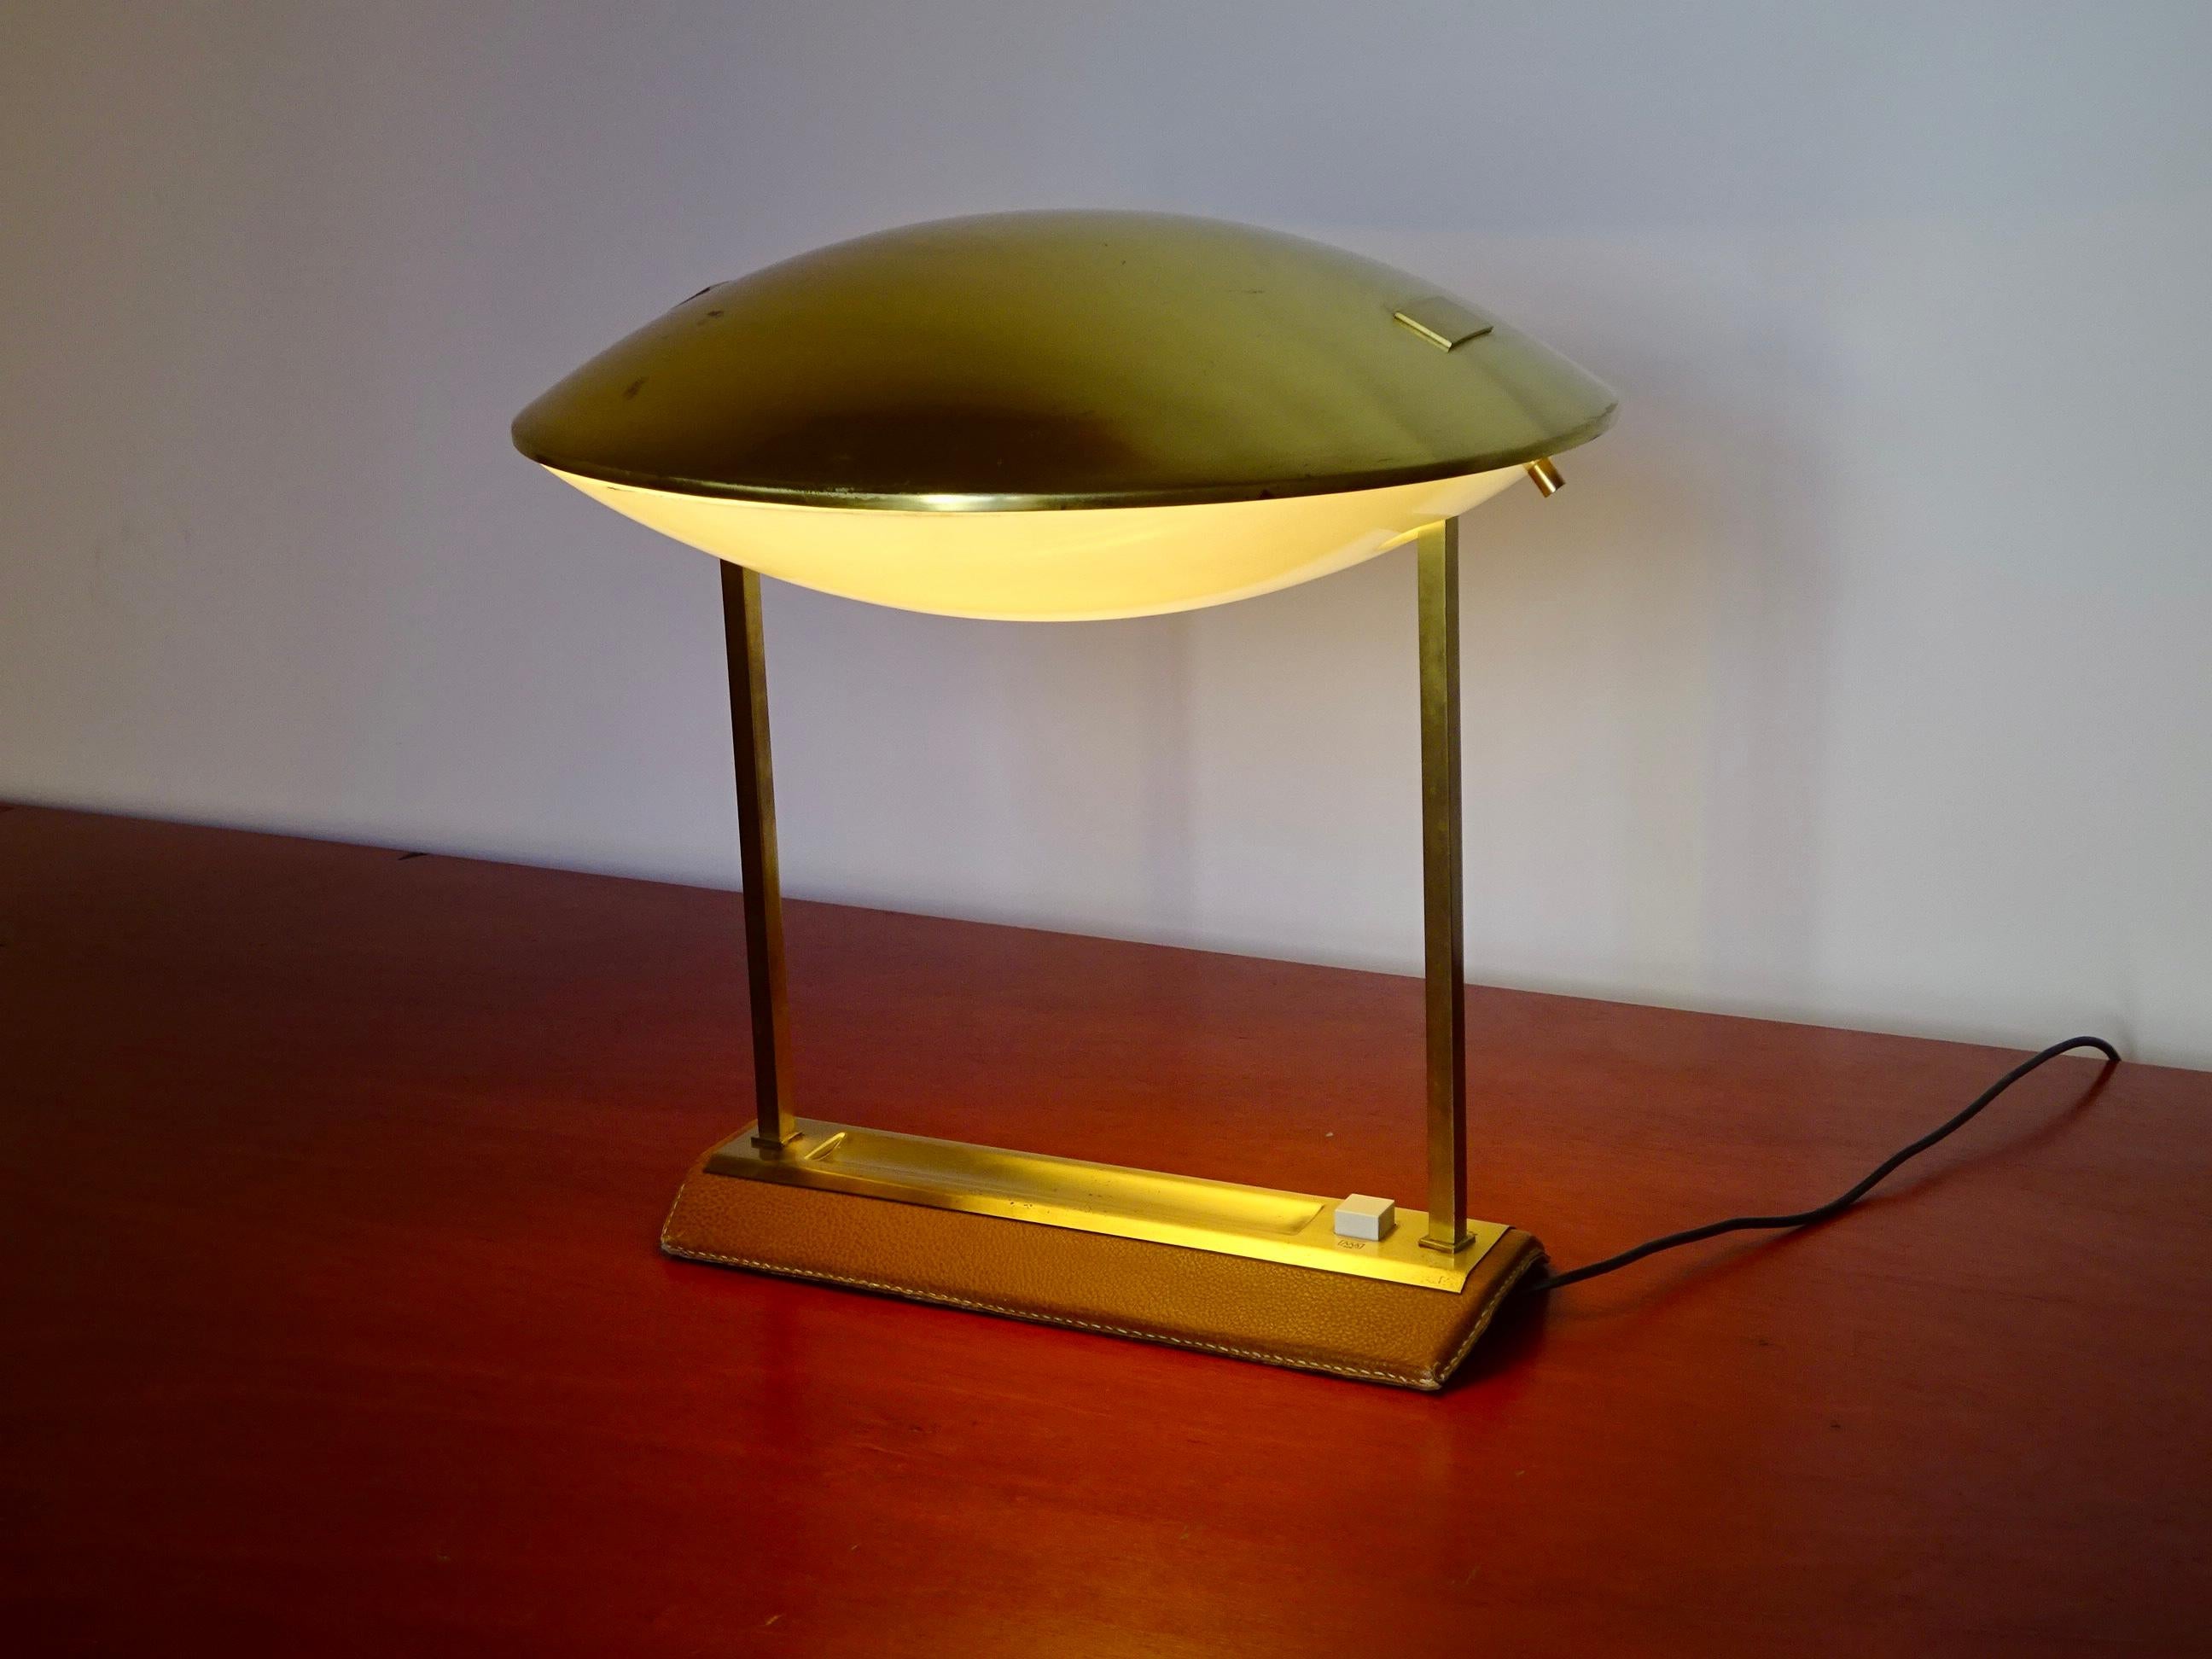 Stilnovo Desk Lamp, Model 8050, Produced by Metalarte, 1960s For Sale 6